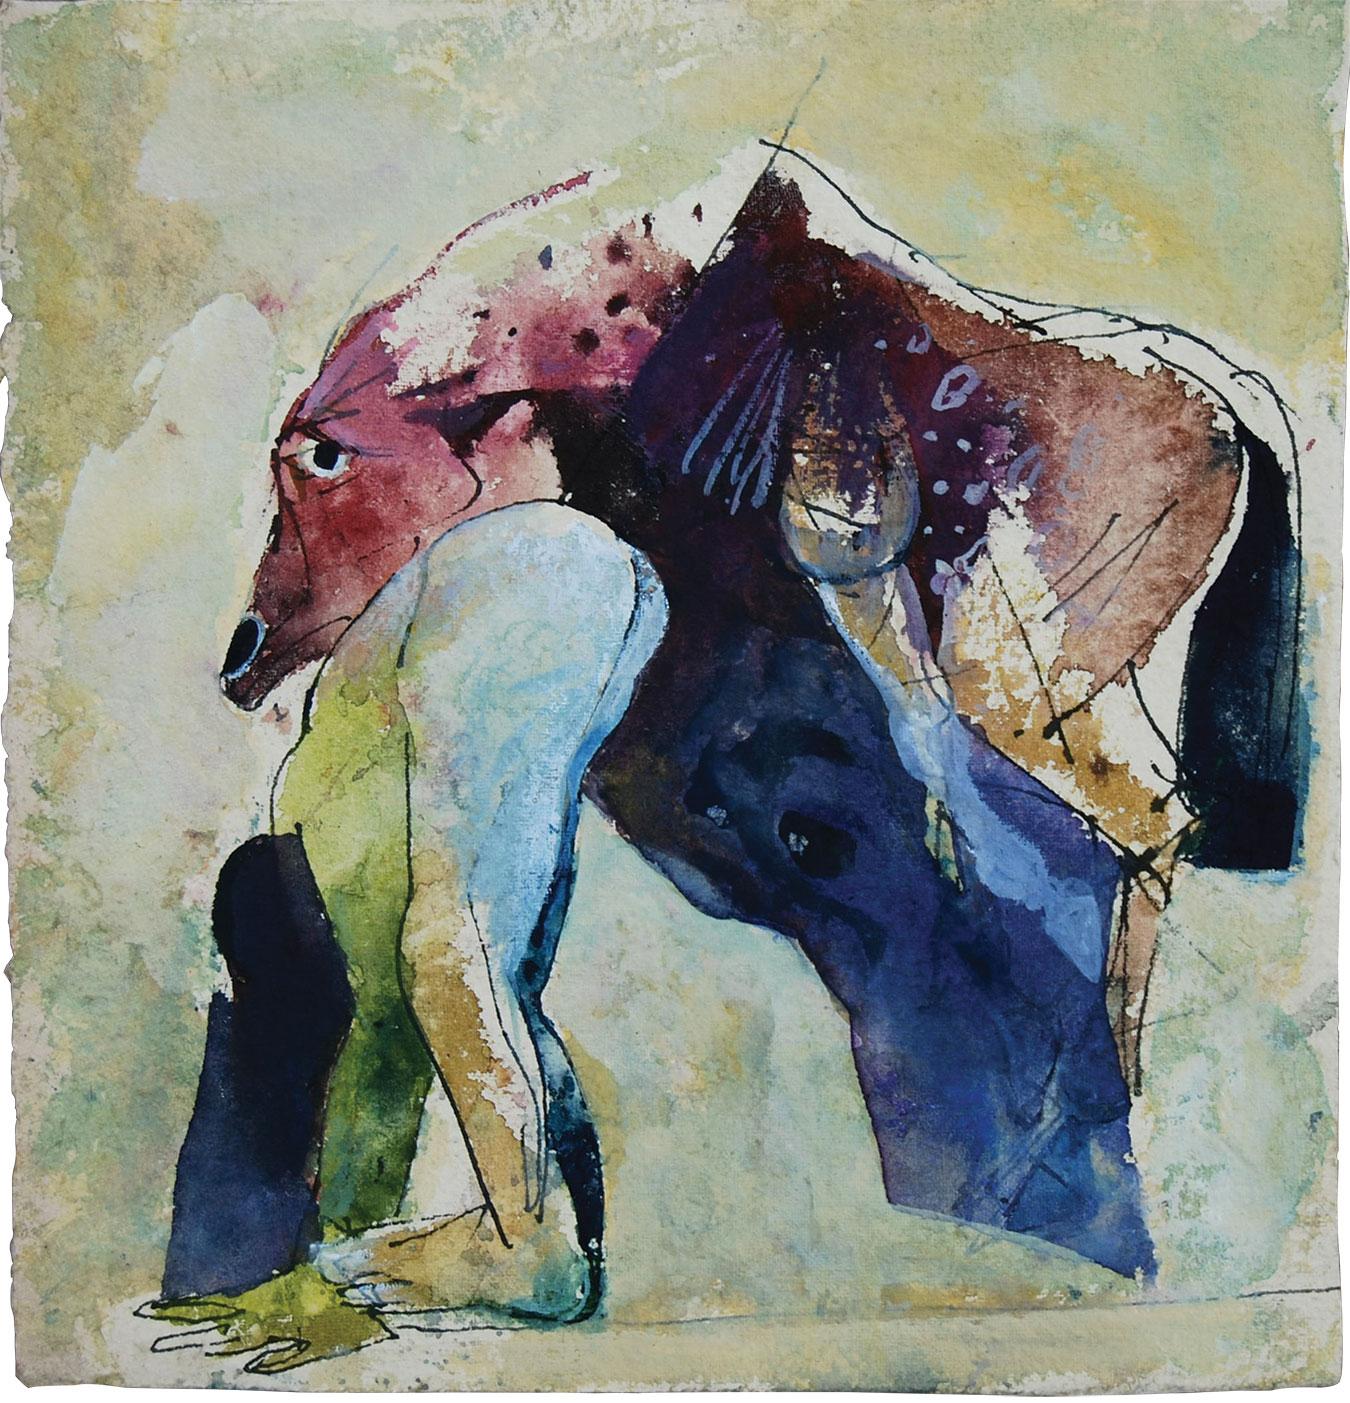 Sunil Das - Akt Frau & Pferd - 9 x 8,5 Zoll (ungerahmte Größe)
Gemischte Medien auf dickem Papier
Kostenloser Versand ohne Rahmen 

Sunil Das (1939-2015) war ein moderner indischer Meisterkünstler aus Bengalen. Sunil Das, der schon während seiner